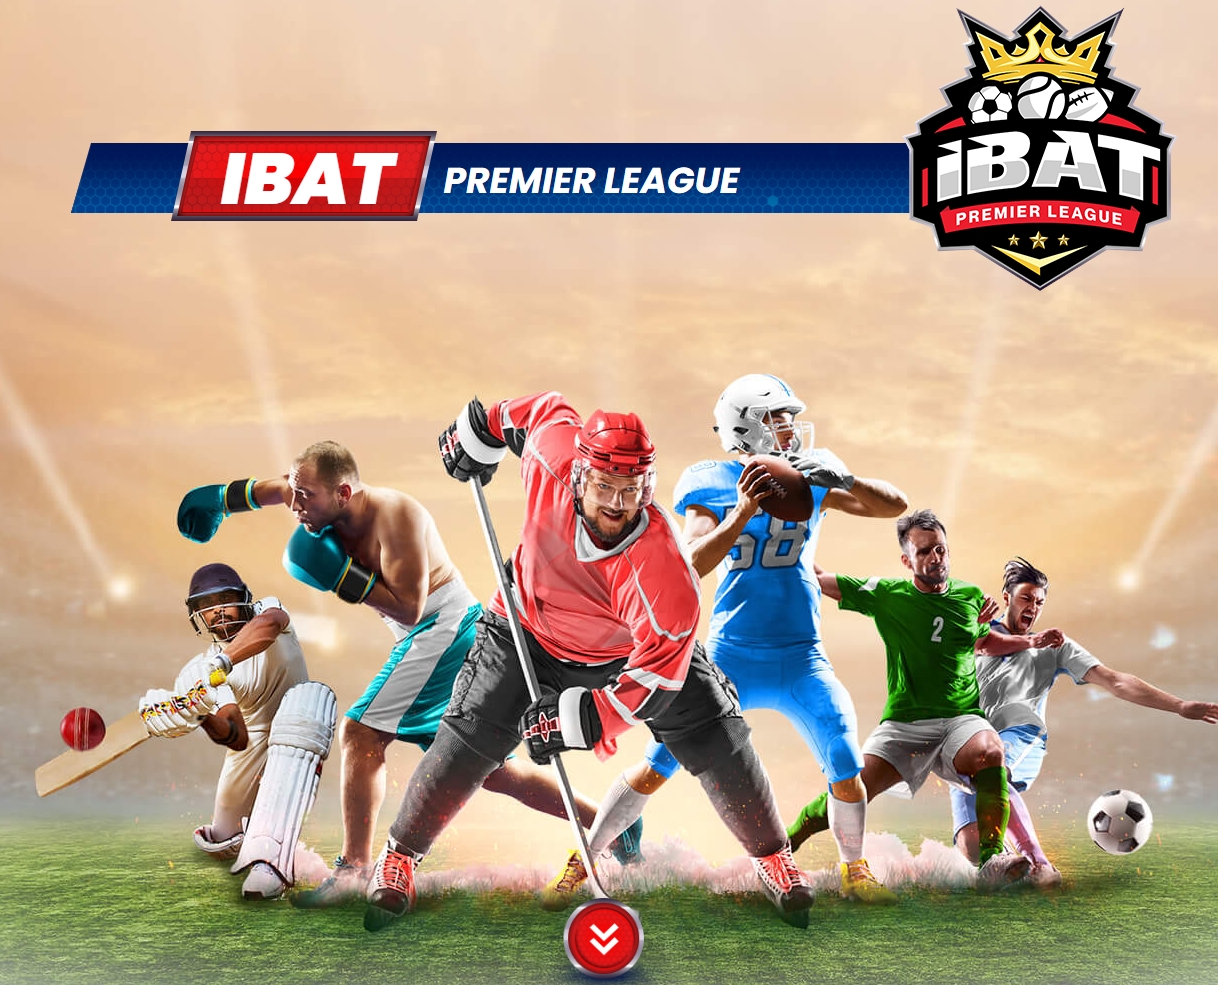 IBAT premier league logo